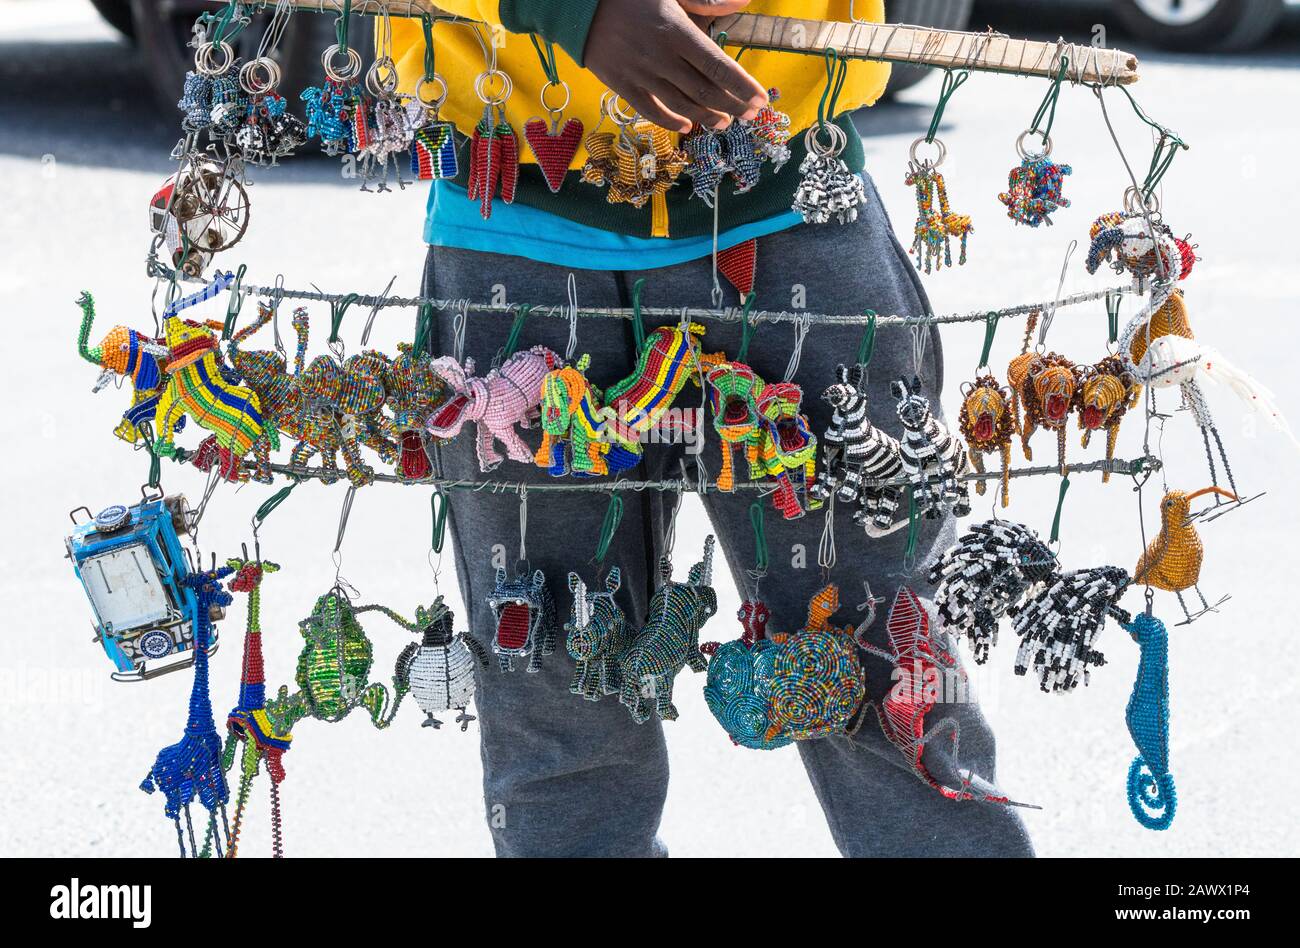 Afrikanische Souvenirs, Kuriositäten, Perlen, Gegenstände, Andenken, Kunsthandwerk, Schmuckstücke, die an Drahtstrukturen hängen, die von Straßenverkäufern in Südafrika aufgefangen werden Stockfoto